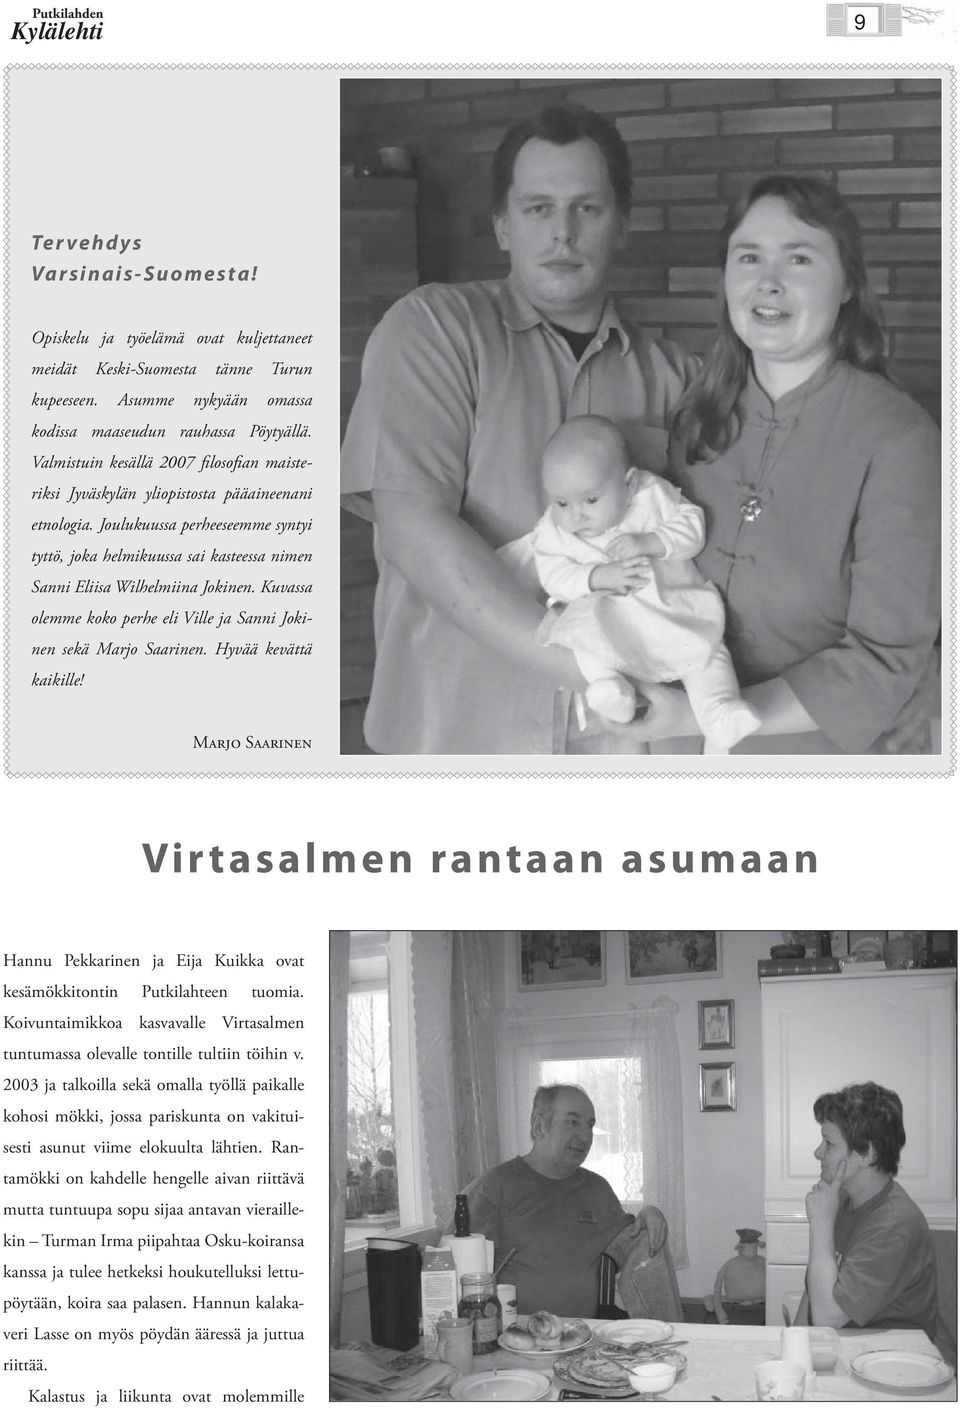 Joulukuussa perheeseemme syntyi tyttö, joka helmikuussa sai kasteessa nimen Sanni Eliisa Wilhelmiina Jokinen. Kuvassa olemme koko perhe eli Ville ja Sanni Jokinen sekä Marjo Saarinen.